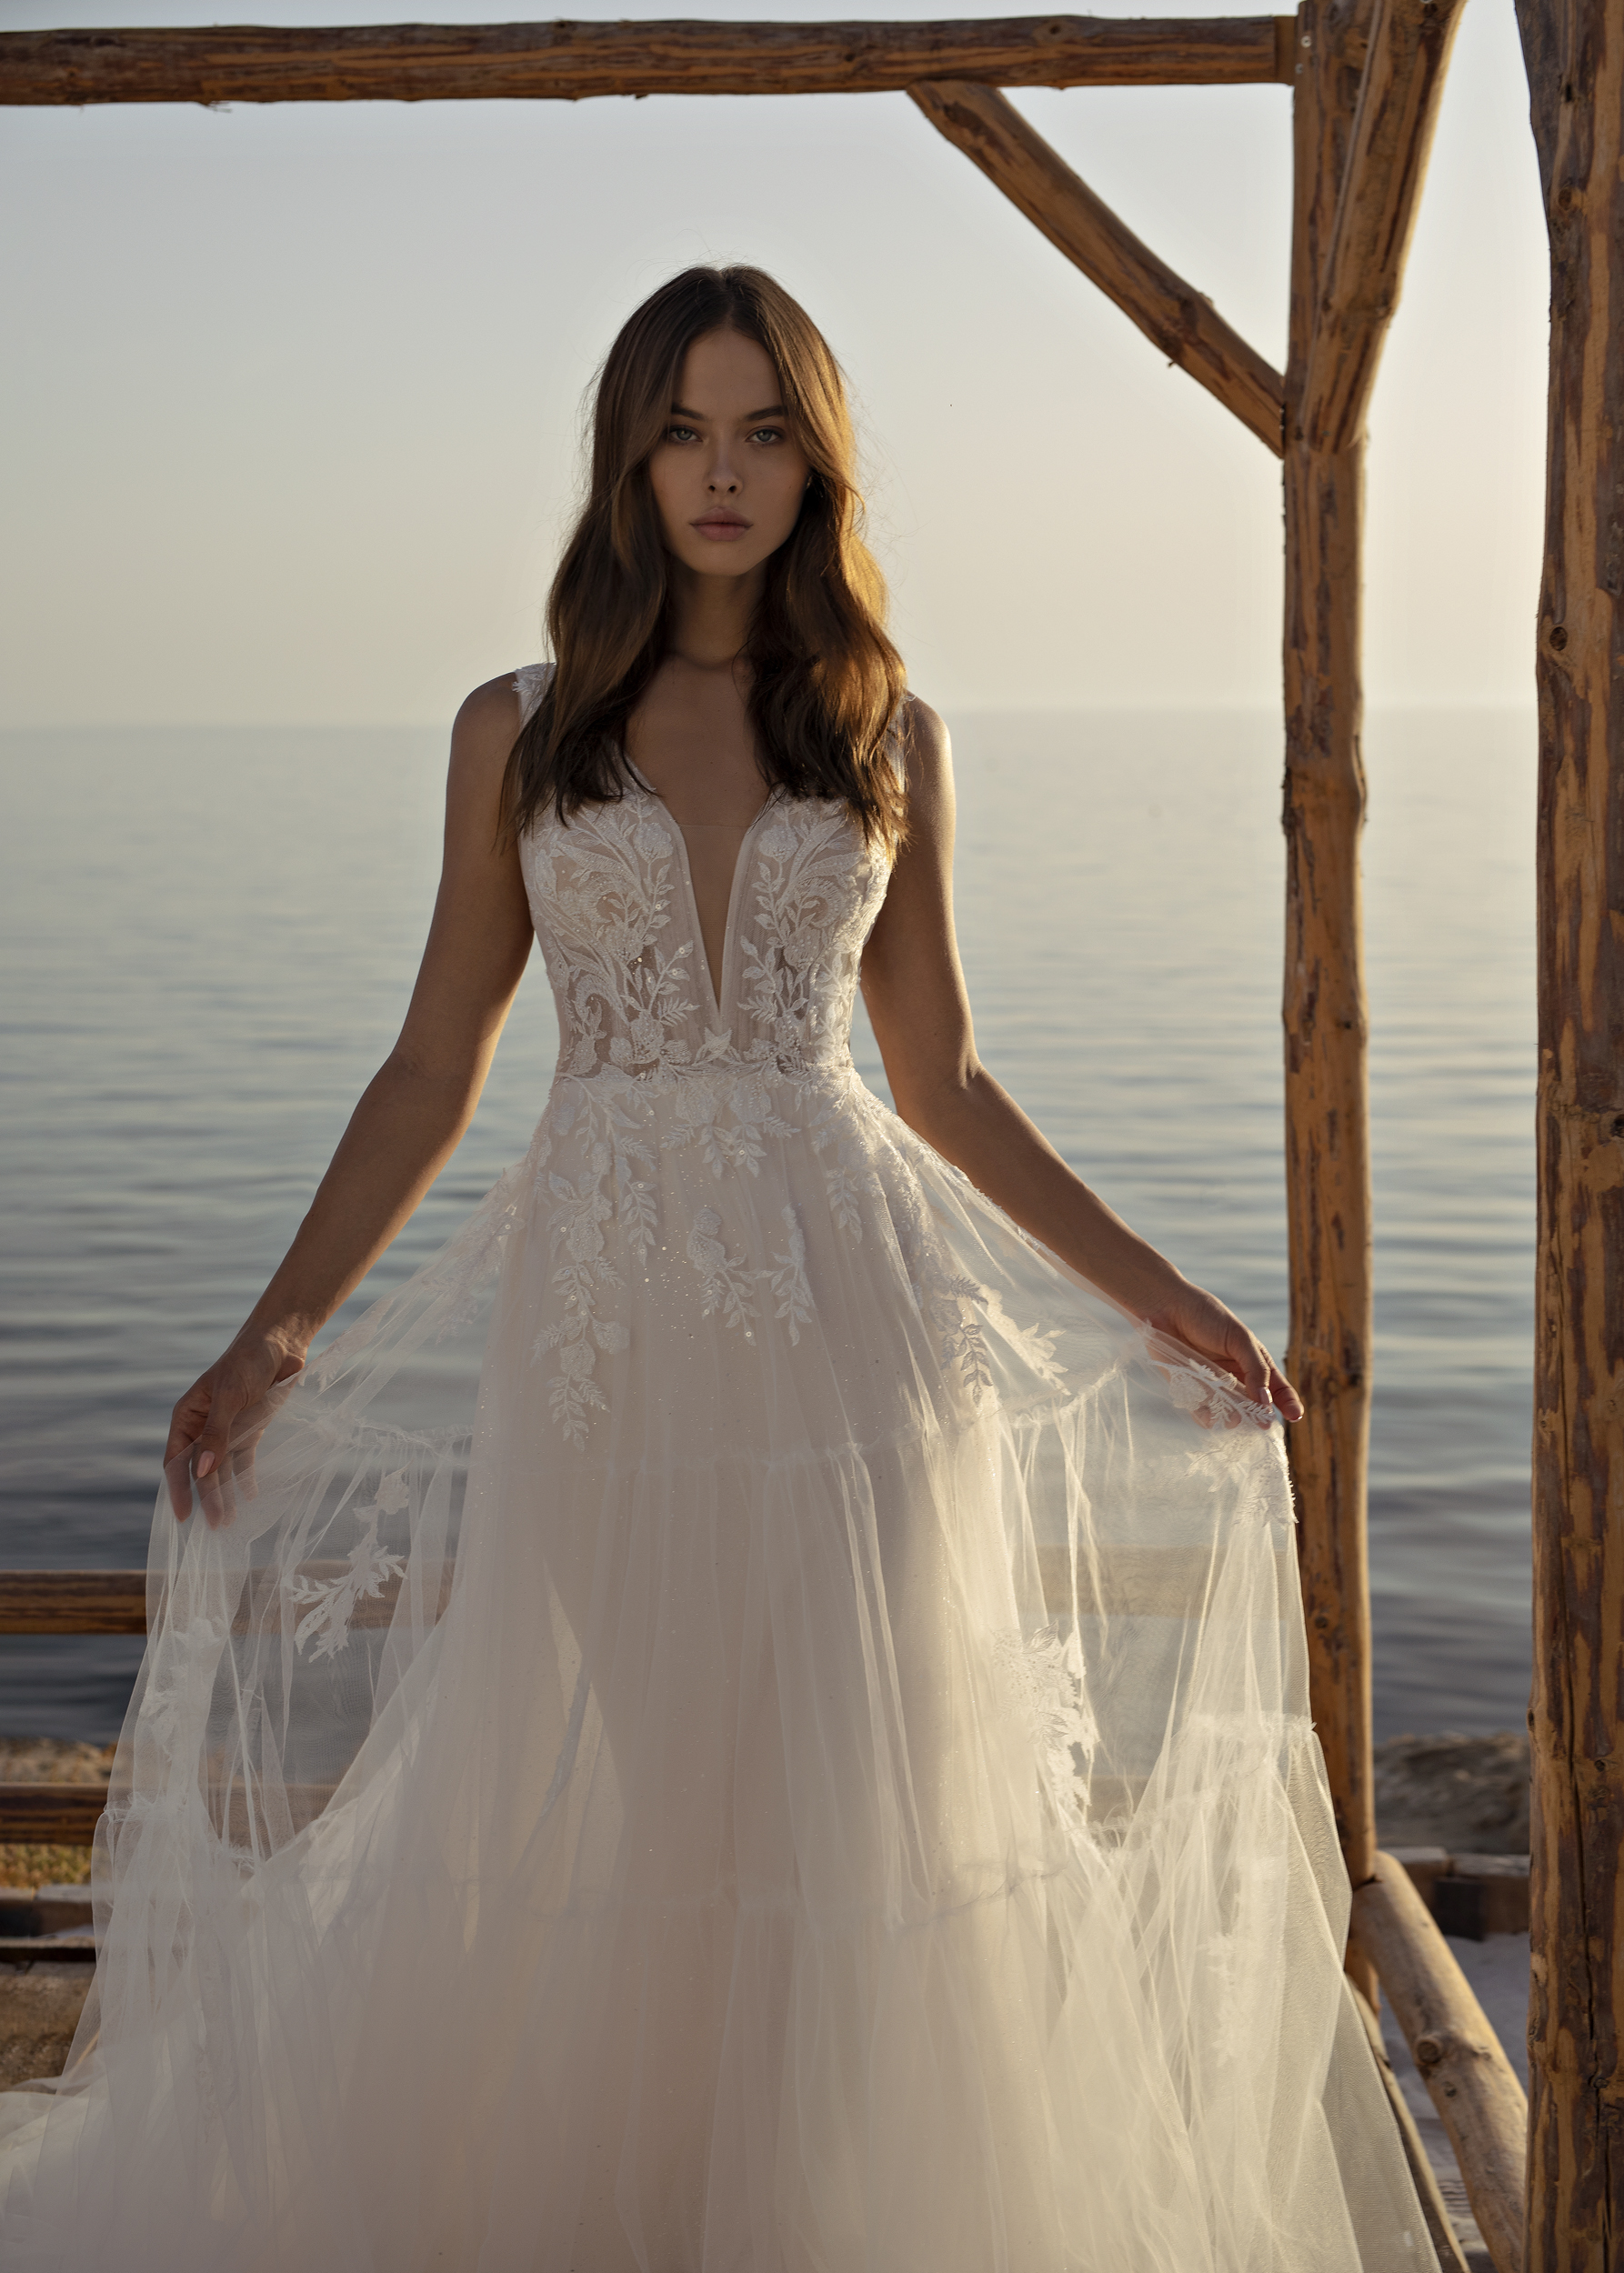 Orabella wedding dress by Modeca